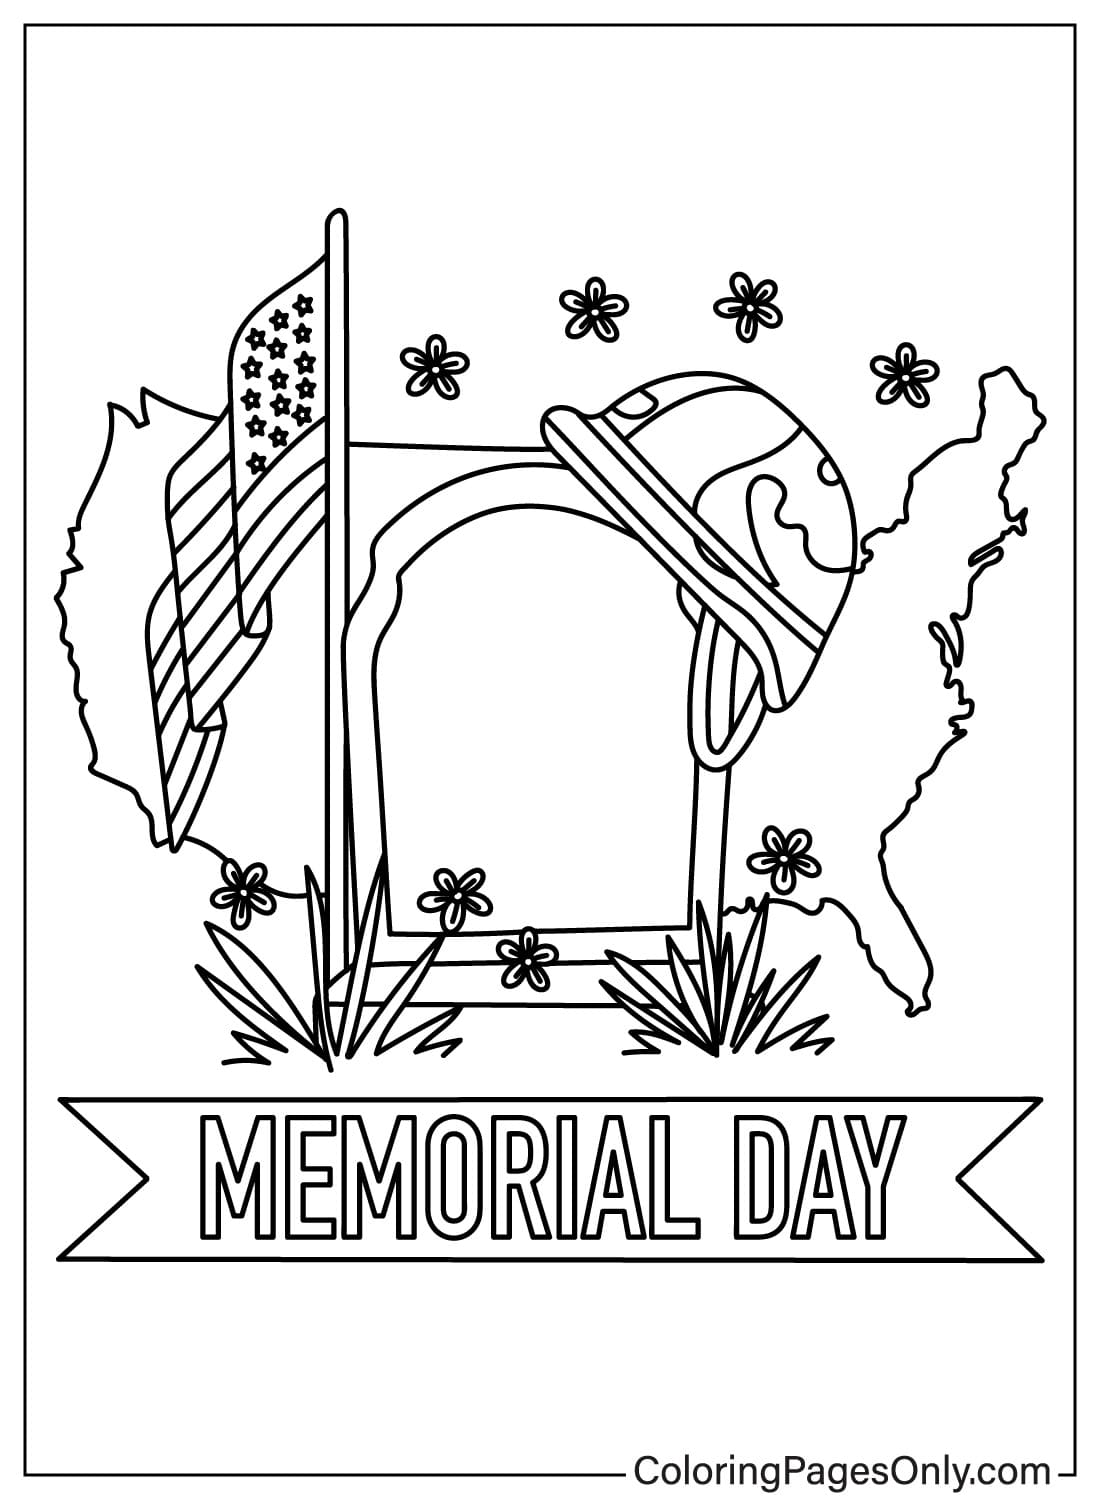 Gedenksteen, vlag en hoed van Memorial Day